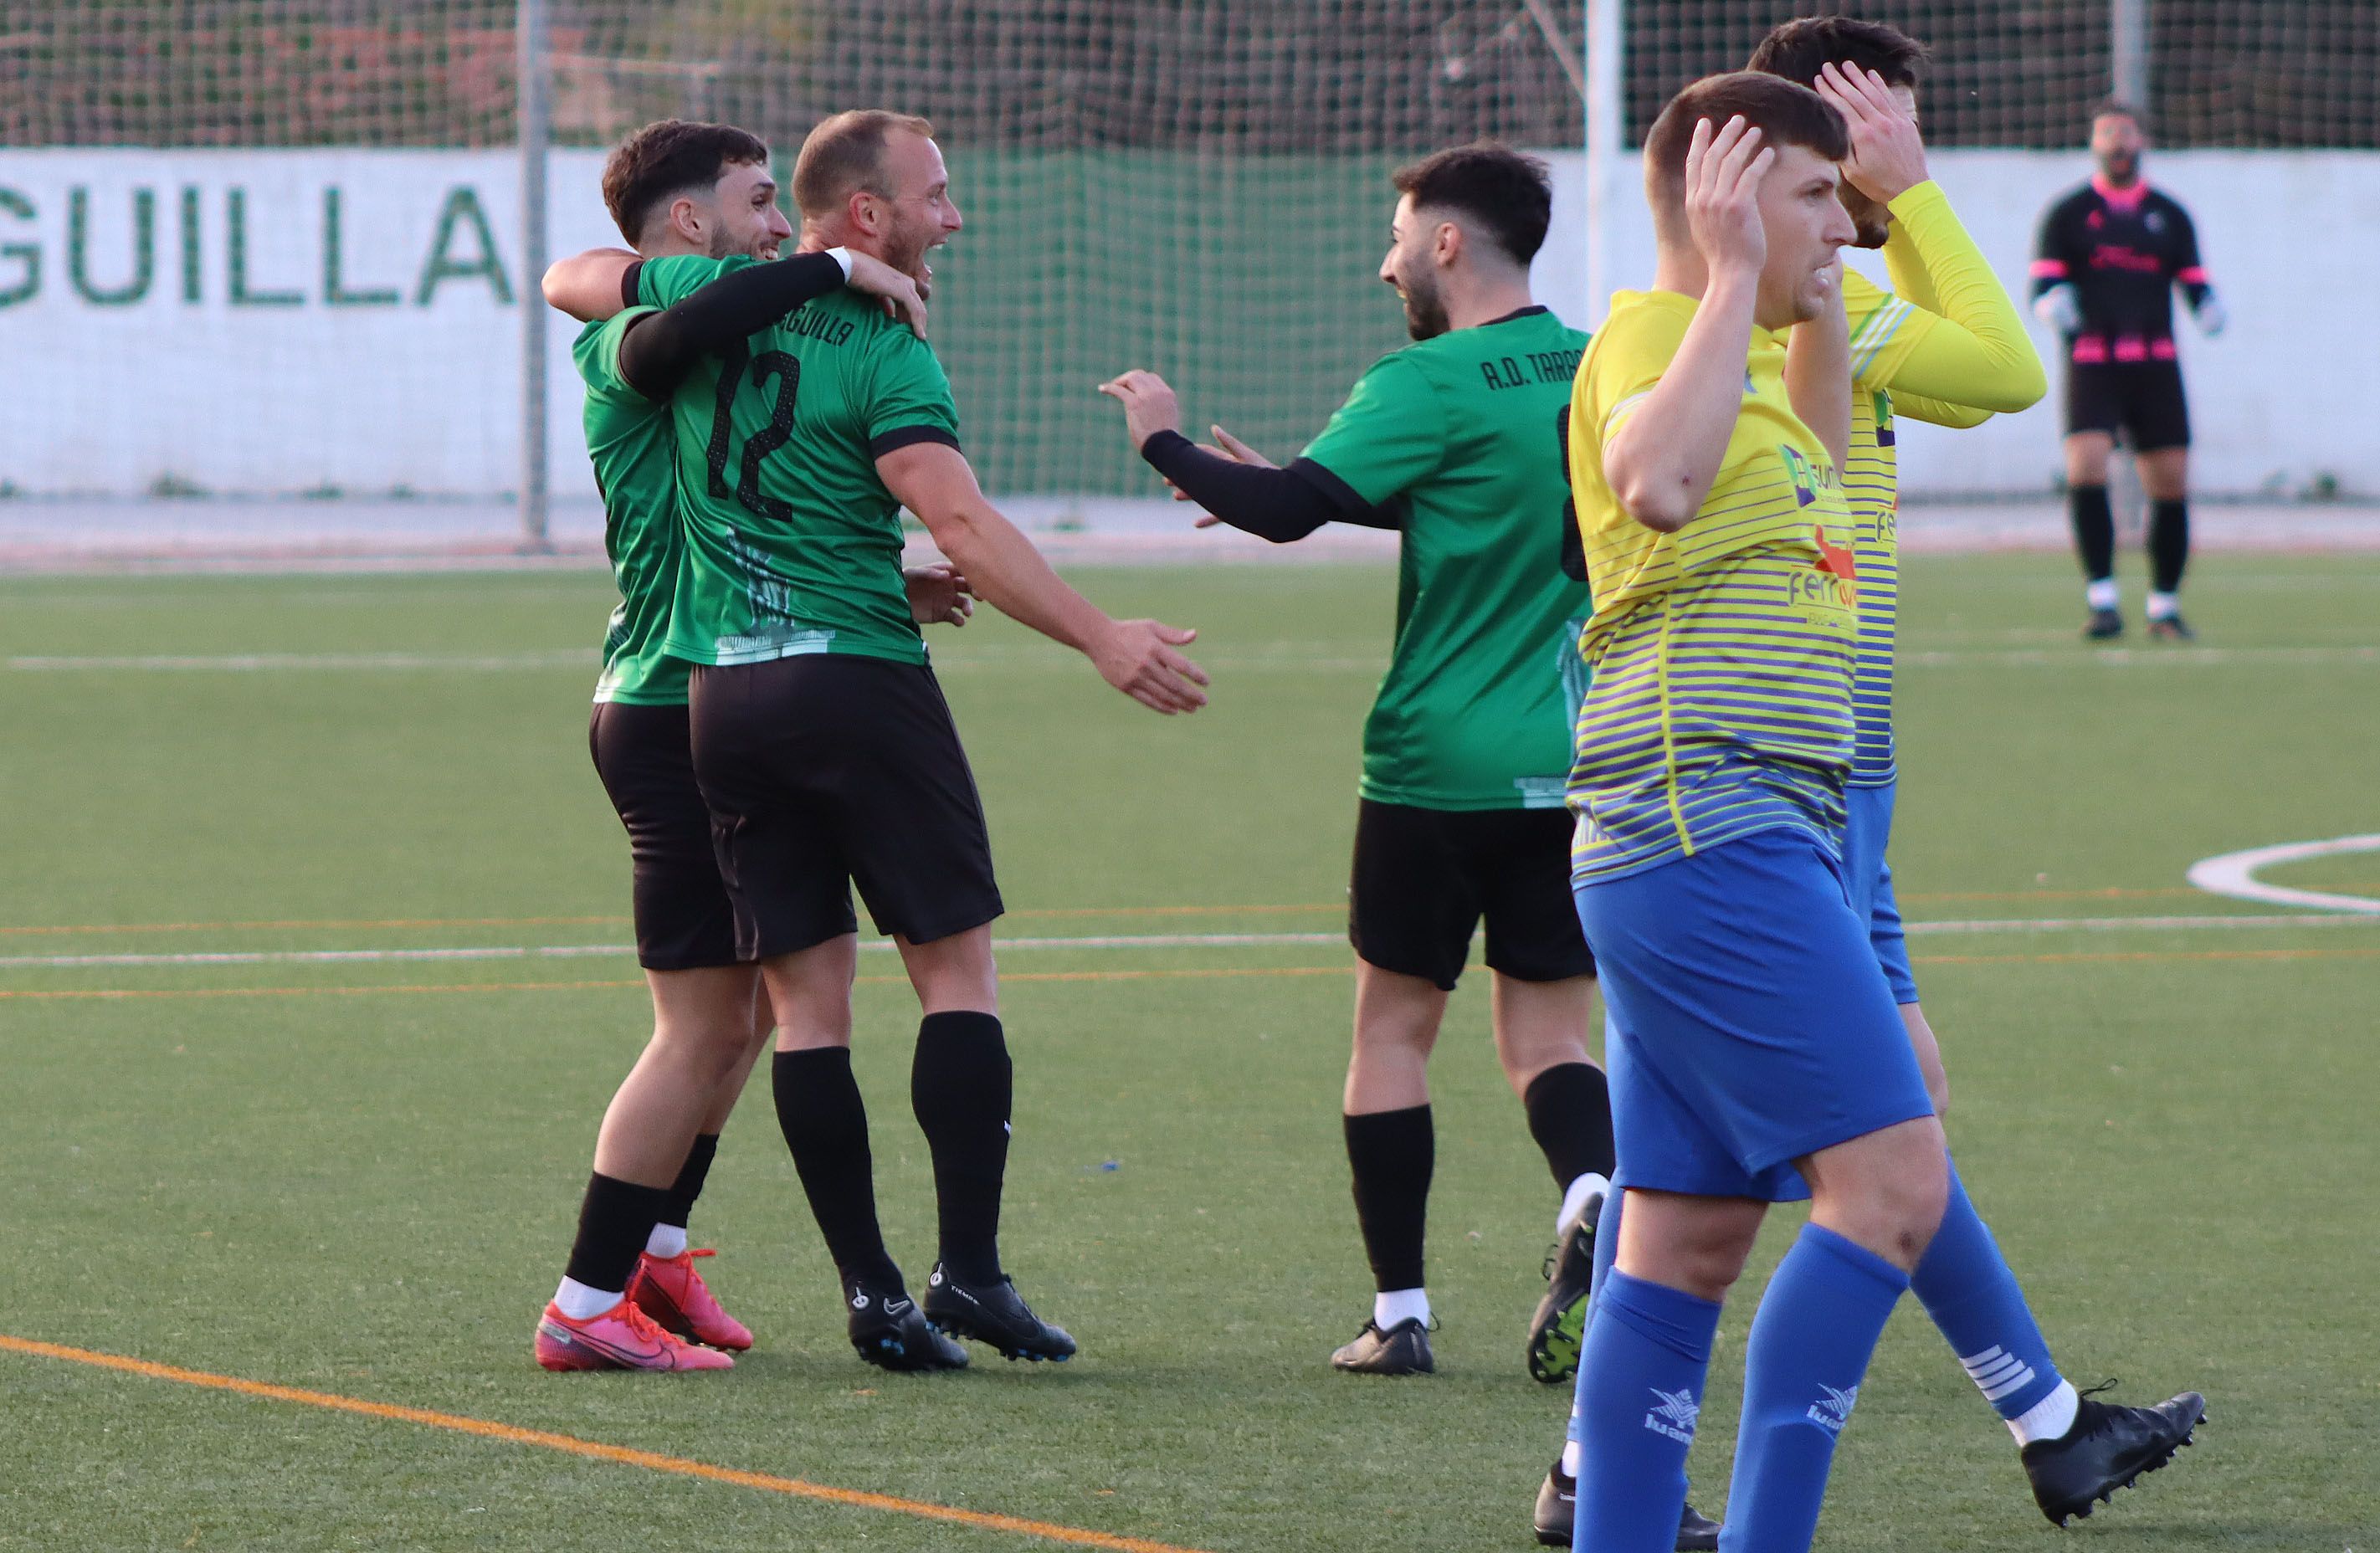 Jesús. Miguel Tirado y Moi Suárez celebran el primer gol al CD Olvera de esta tarde/Foto: AXEL S.C.